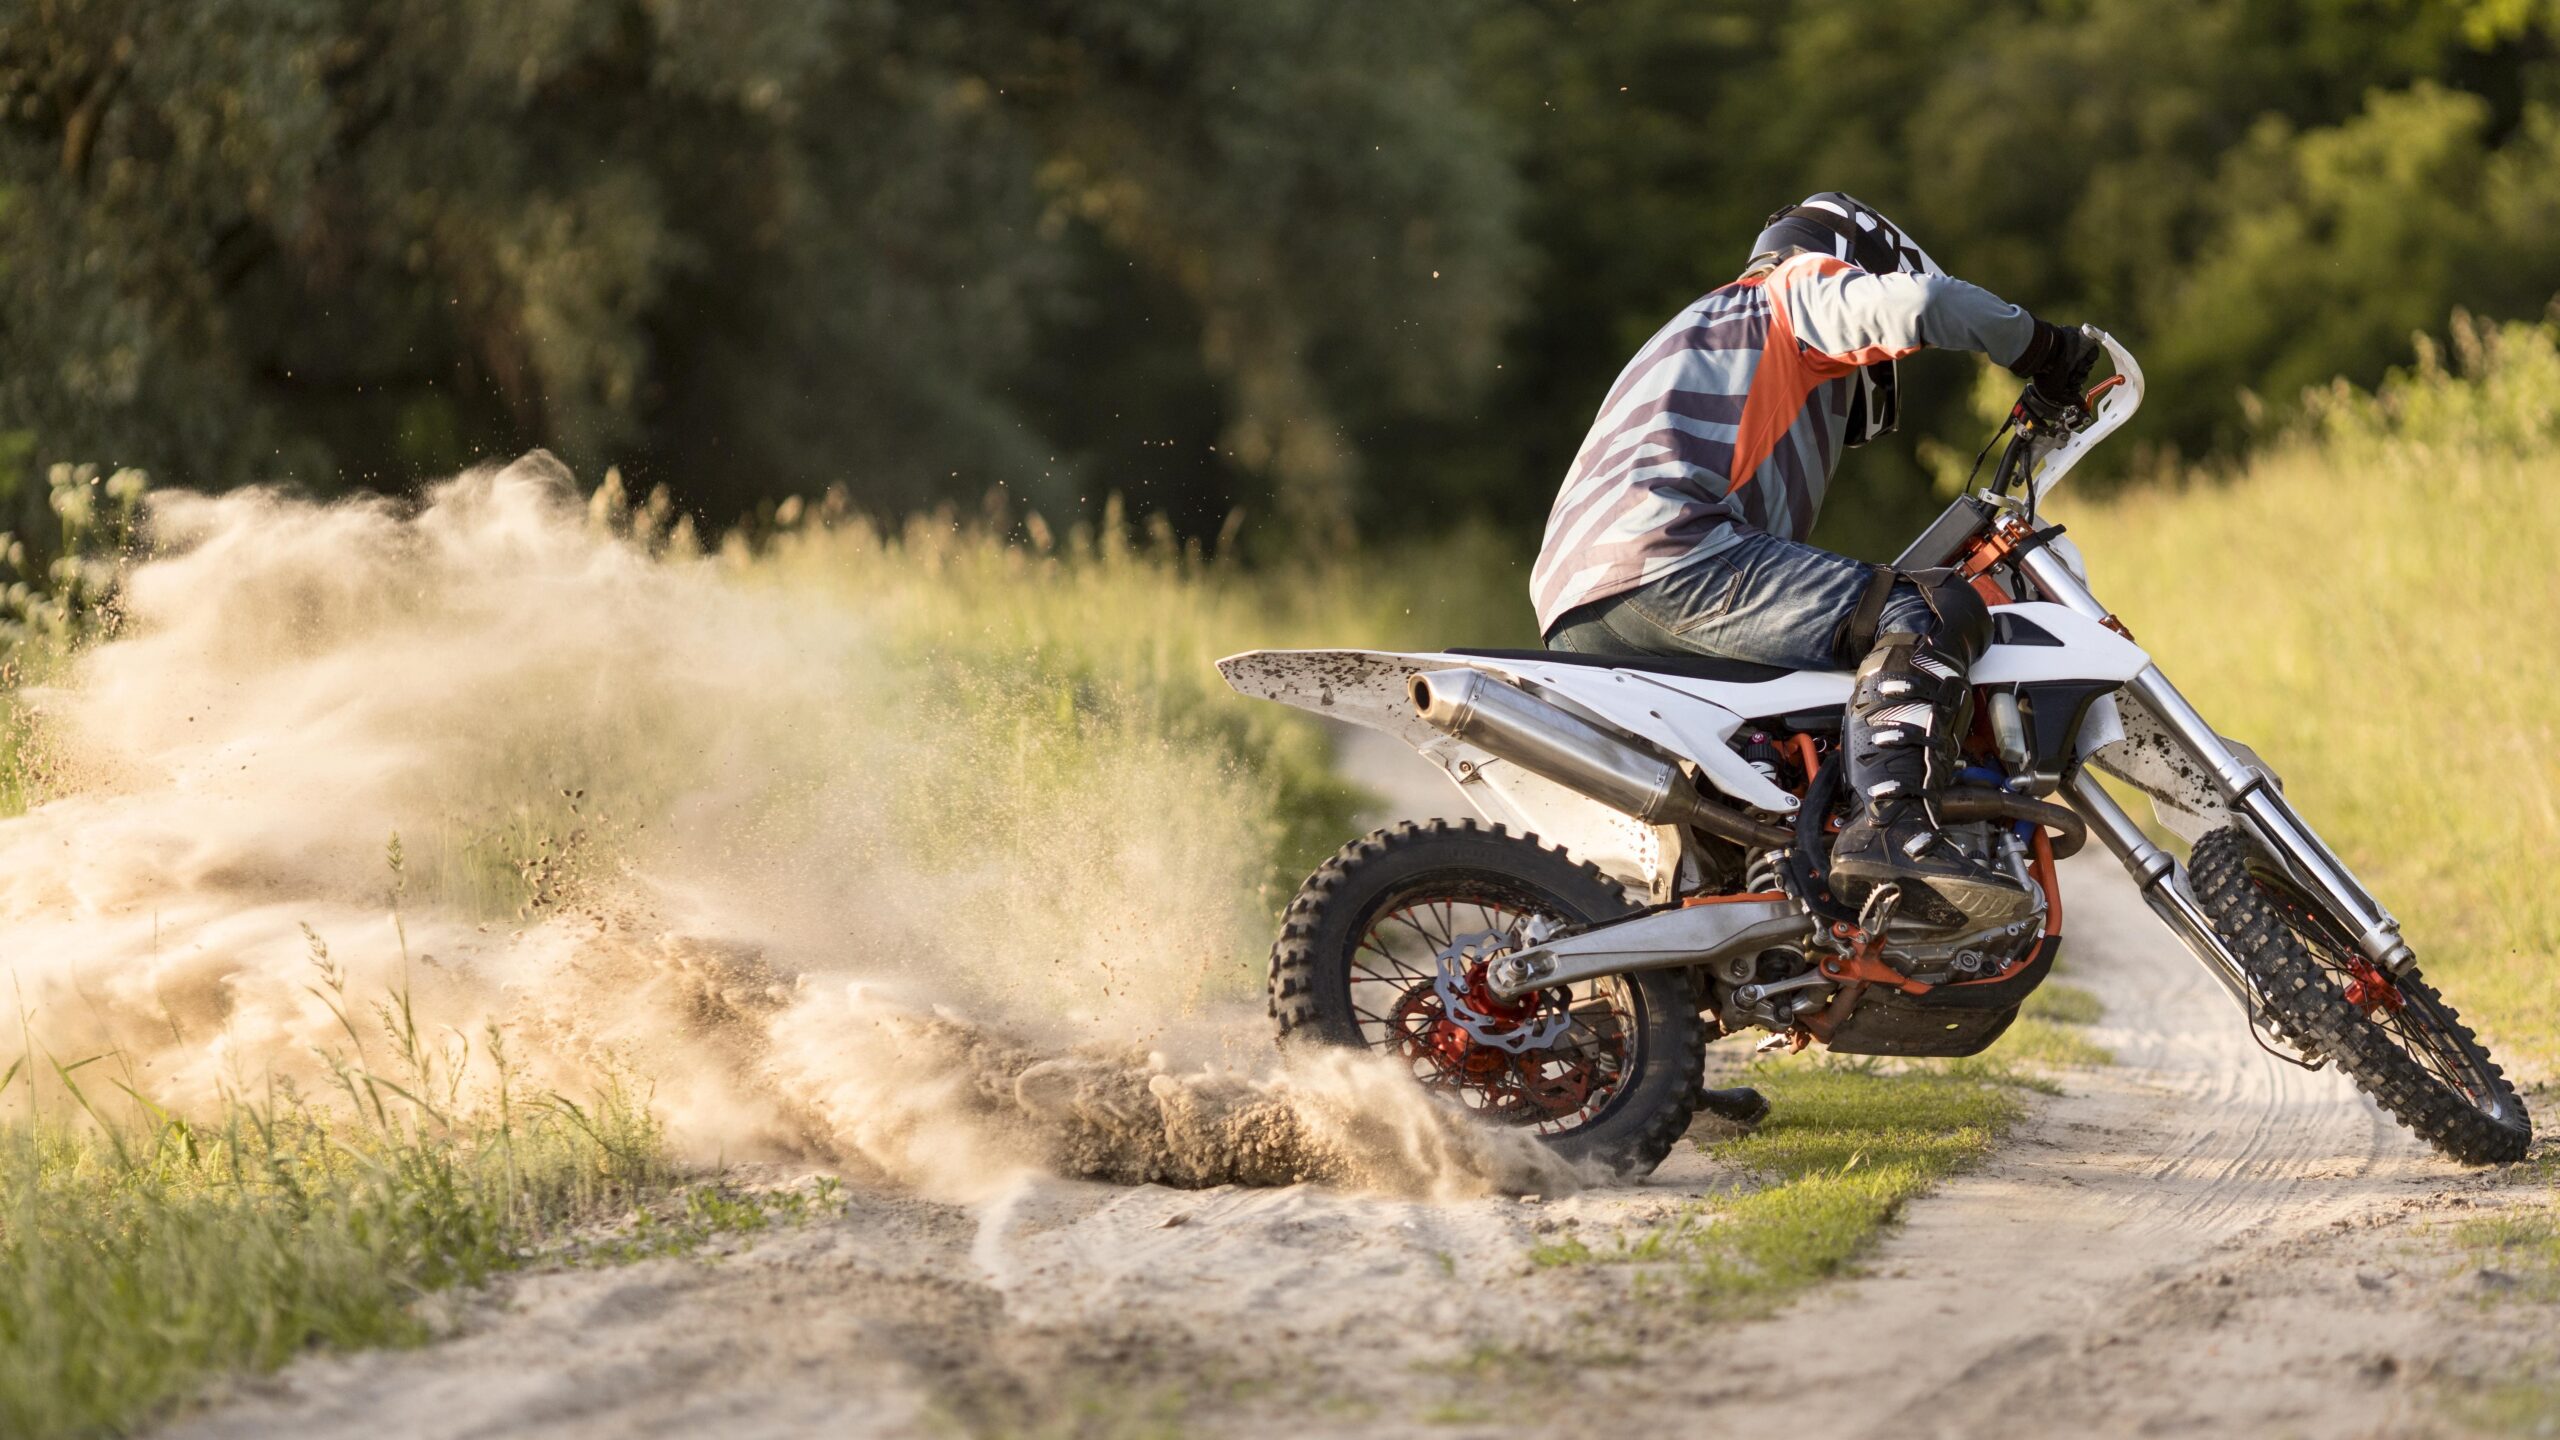 Moto De Motocross Na Trilha Vale A Pena? Veja Alguns Detalhes